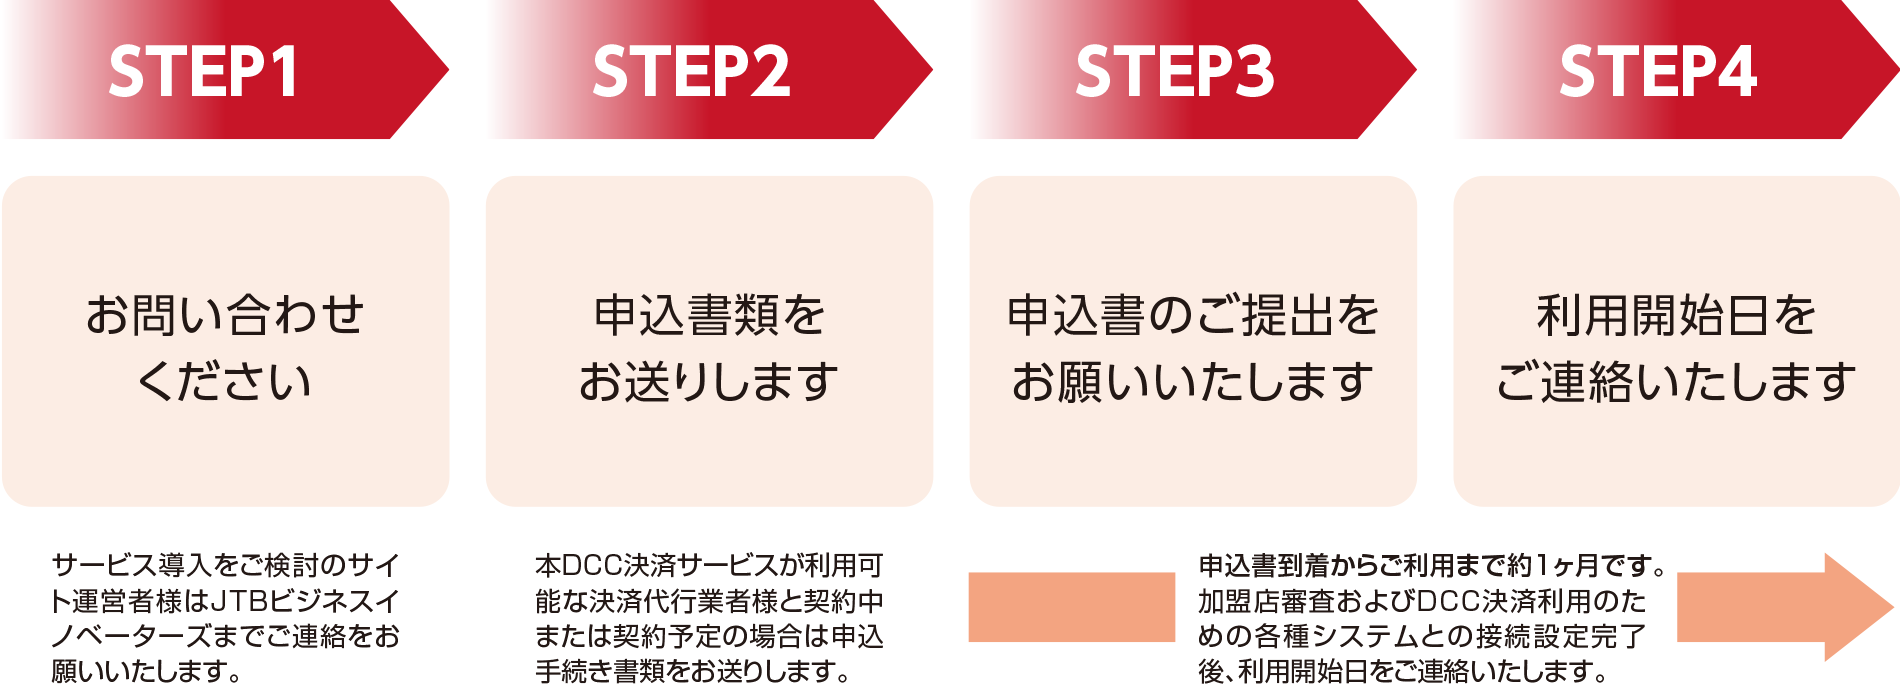 STEP1 お問い合わせください STEP2 申込書類をお送りします STEP3 申込書のご提出をお願いいたします STEP4 利用開始日をご連絡いたします